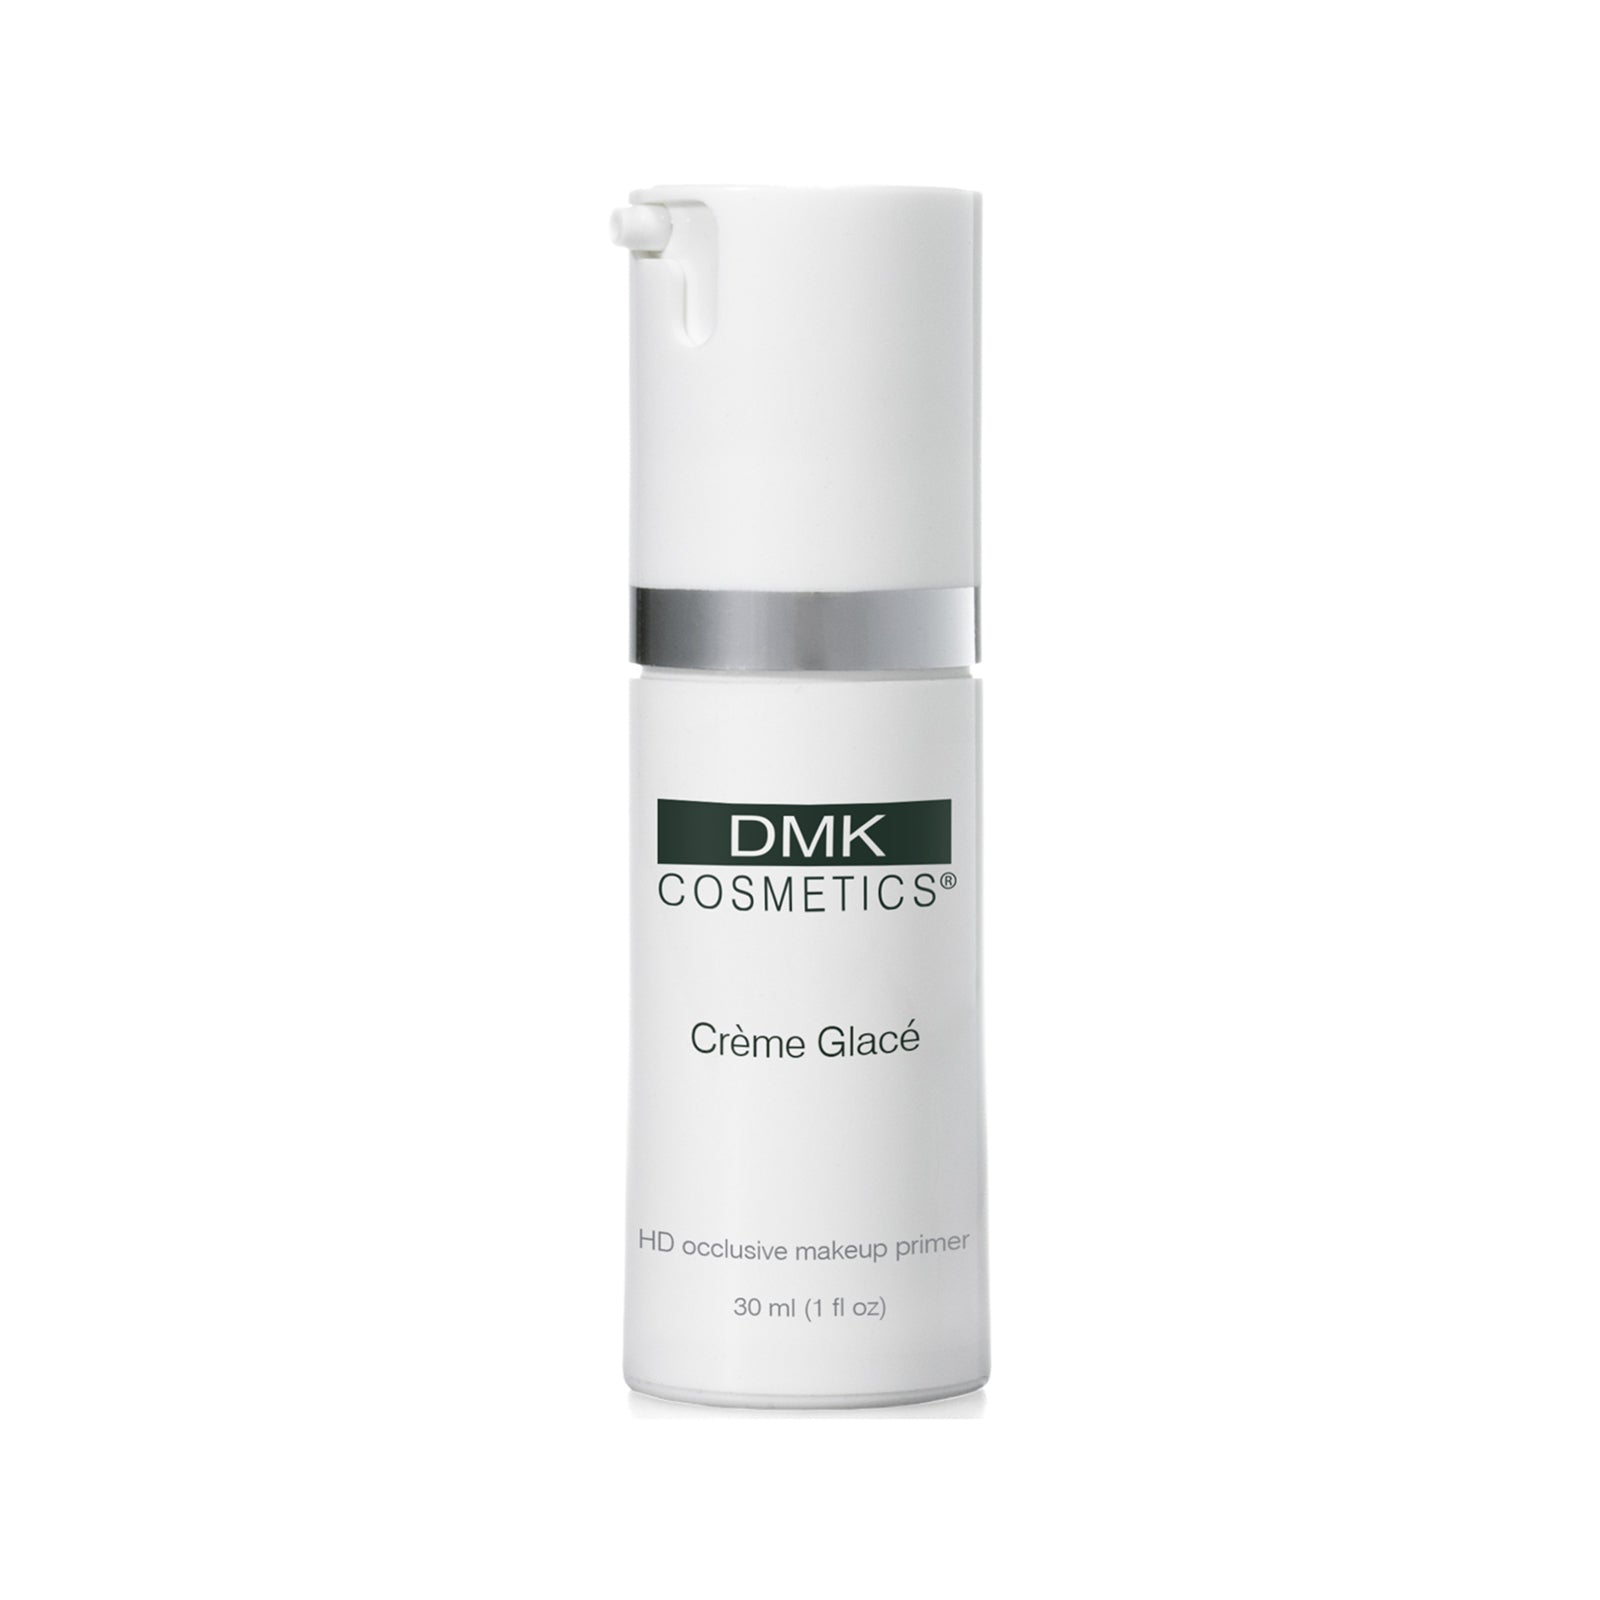 DMKC, Crème Glace